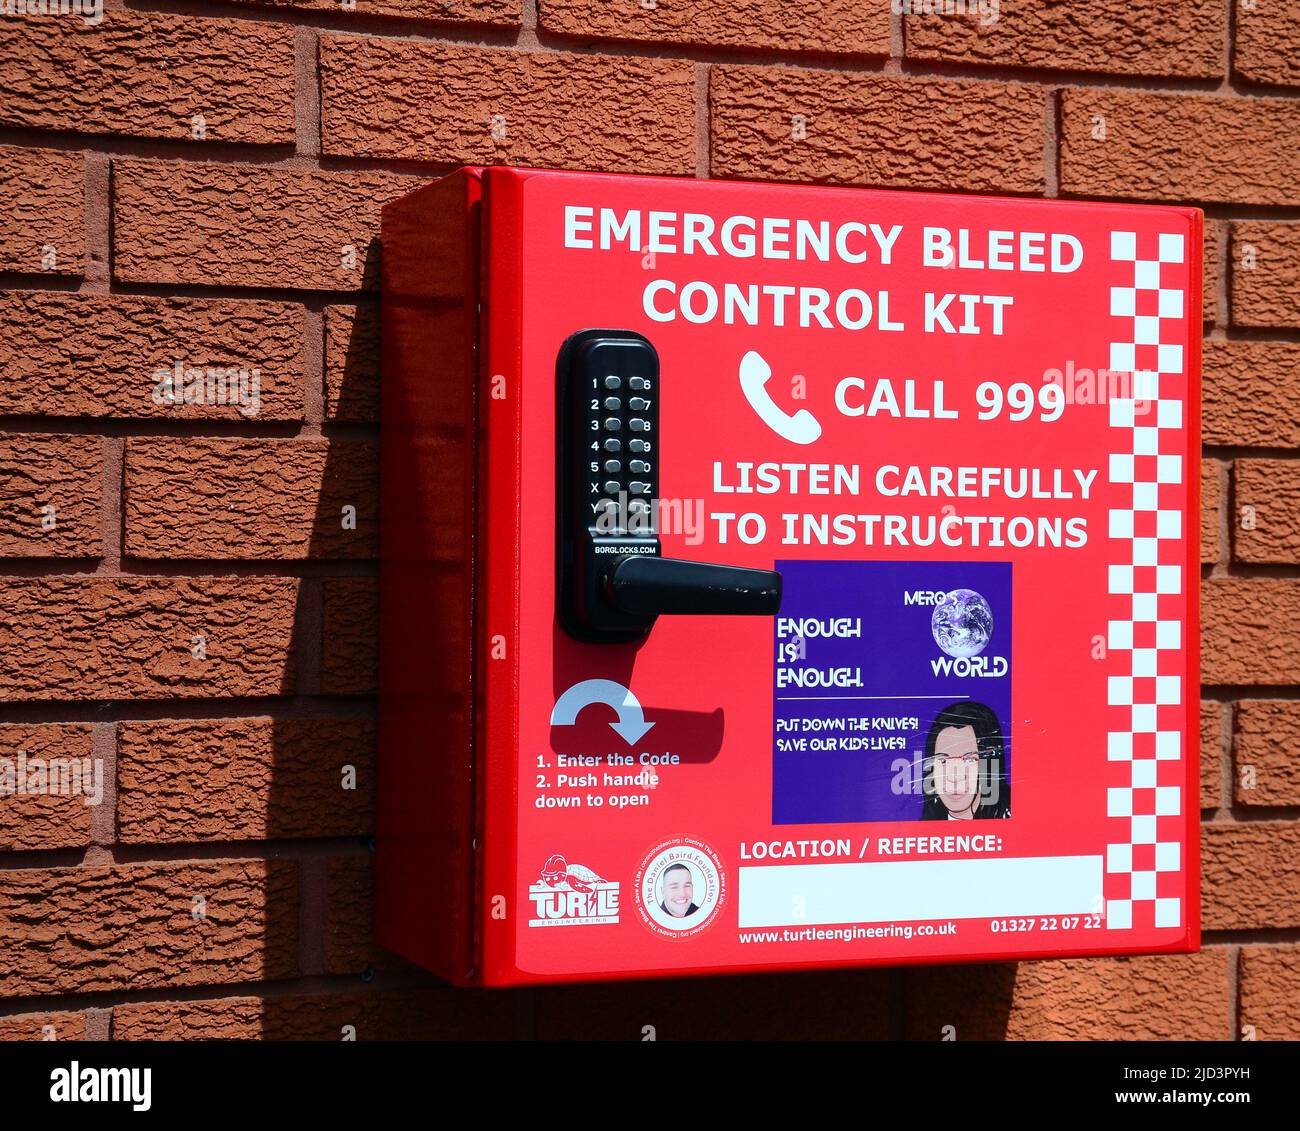 Notentlüftung-Kontrollkit, montiert in einem roten Kasten an einer Ziegelwand mit Anweisungen an der Vorderseite, um die Notrufleitung 999 in Manchester, England, Großbritannien, anzurufen. Stockfoto